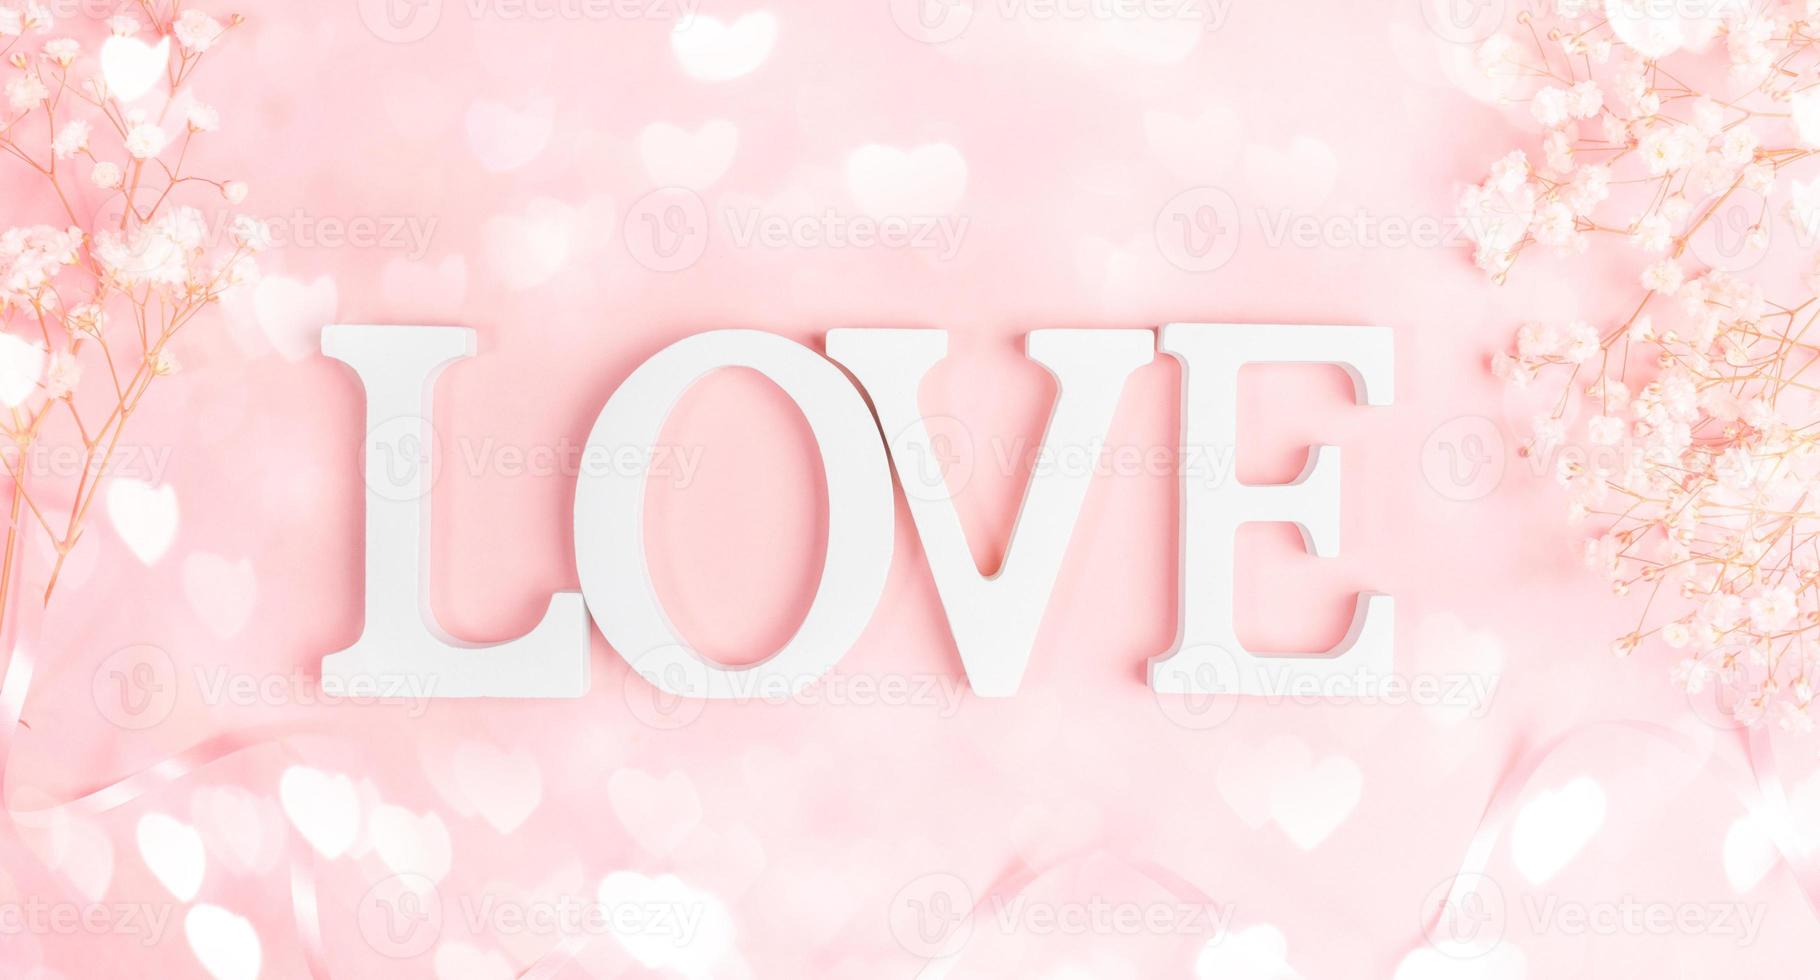 letras brancas amam com moldura de gipsofila branco suave em rosa pastel com corações de luzes de bokeh. foto